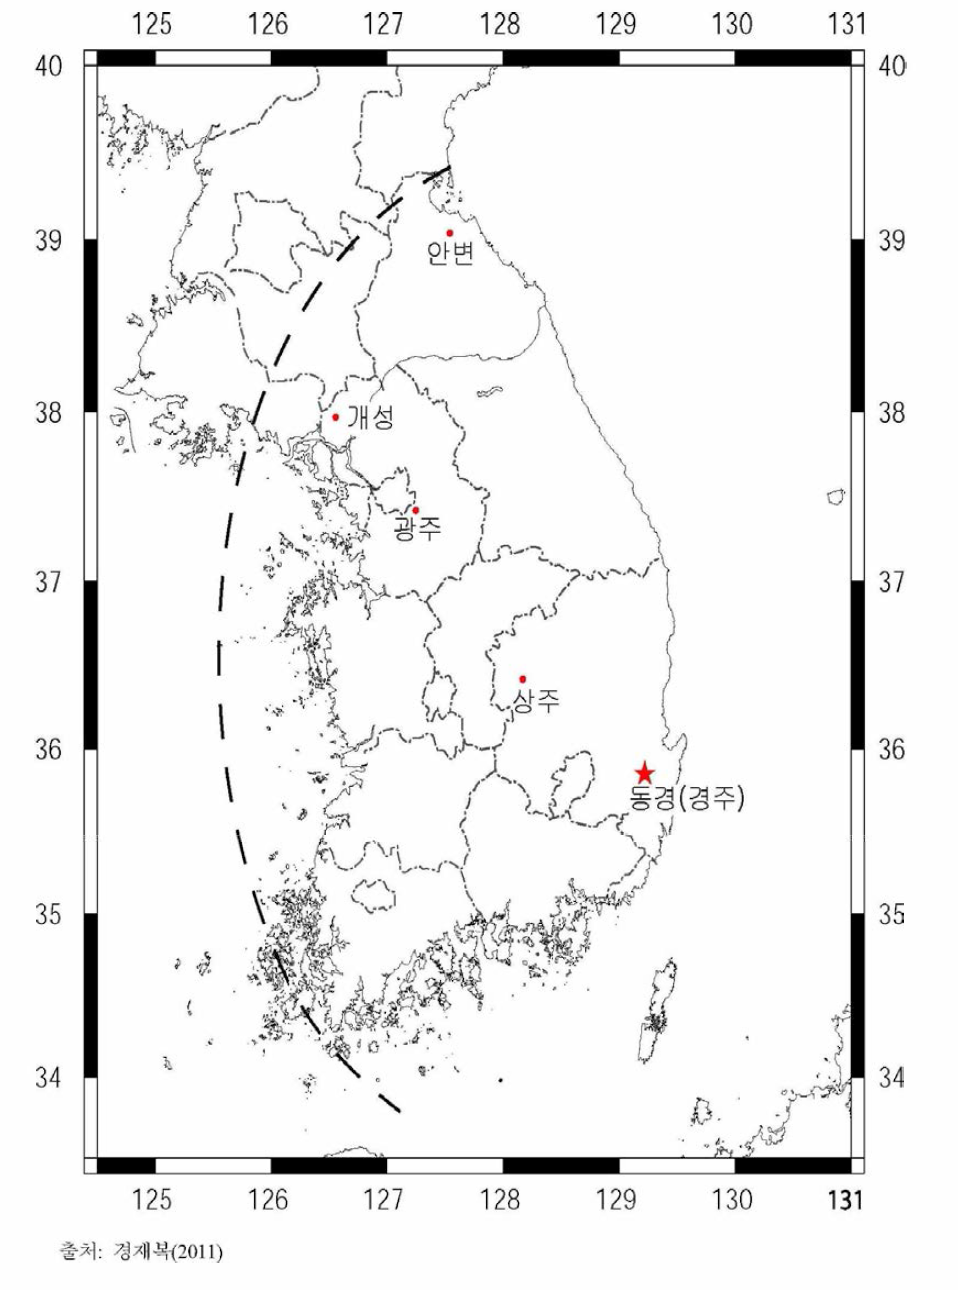 1036년 7월 17일 지진(MM진도 VIII)에 의한 감진 구역 분포